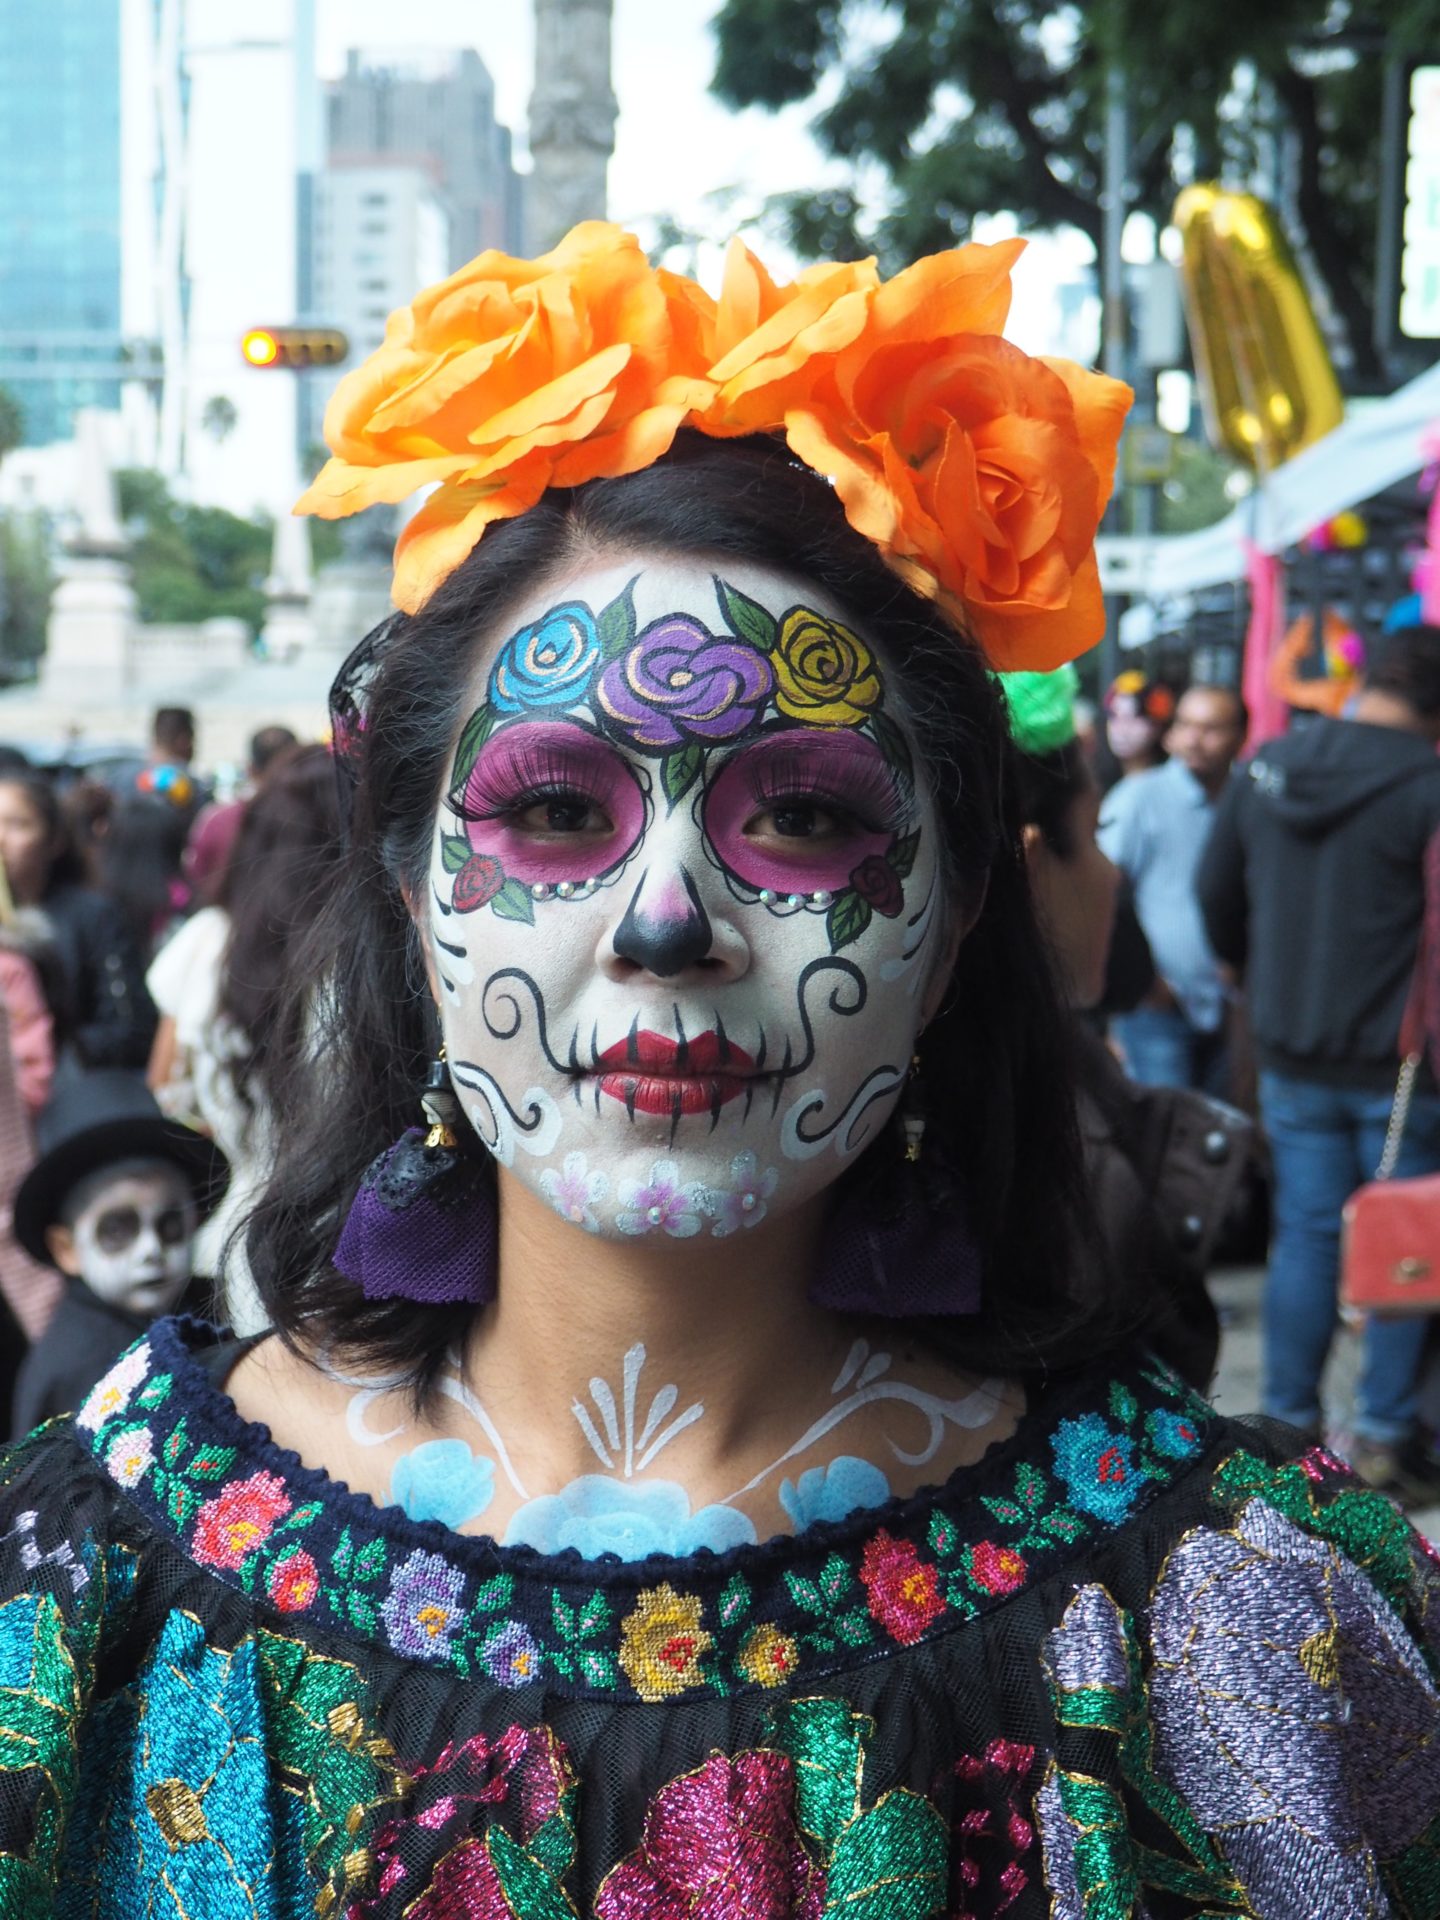 The Dia de los Muertos Tradition That Almost Wasn't